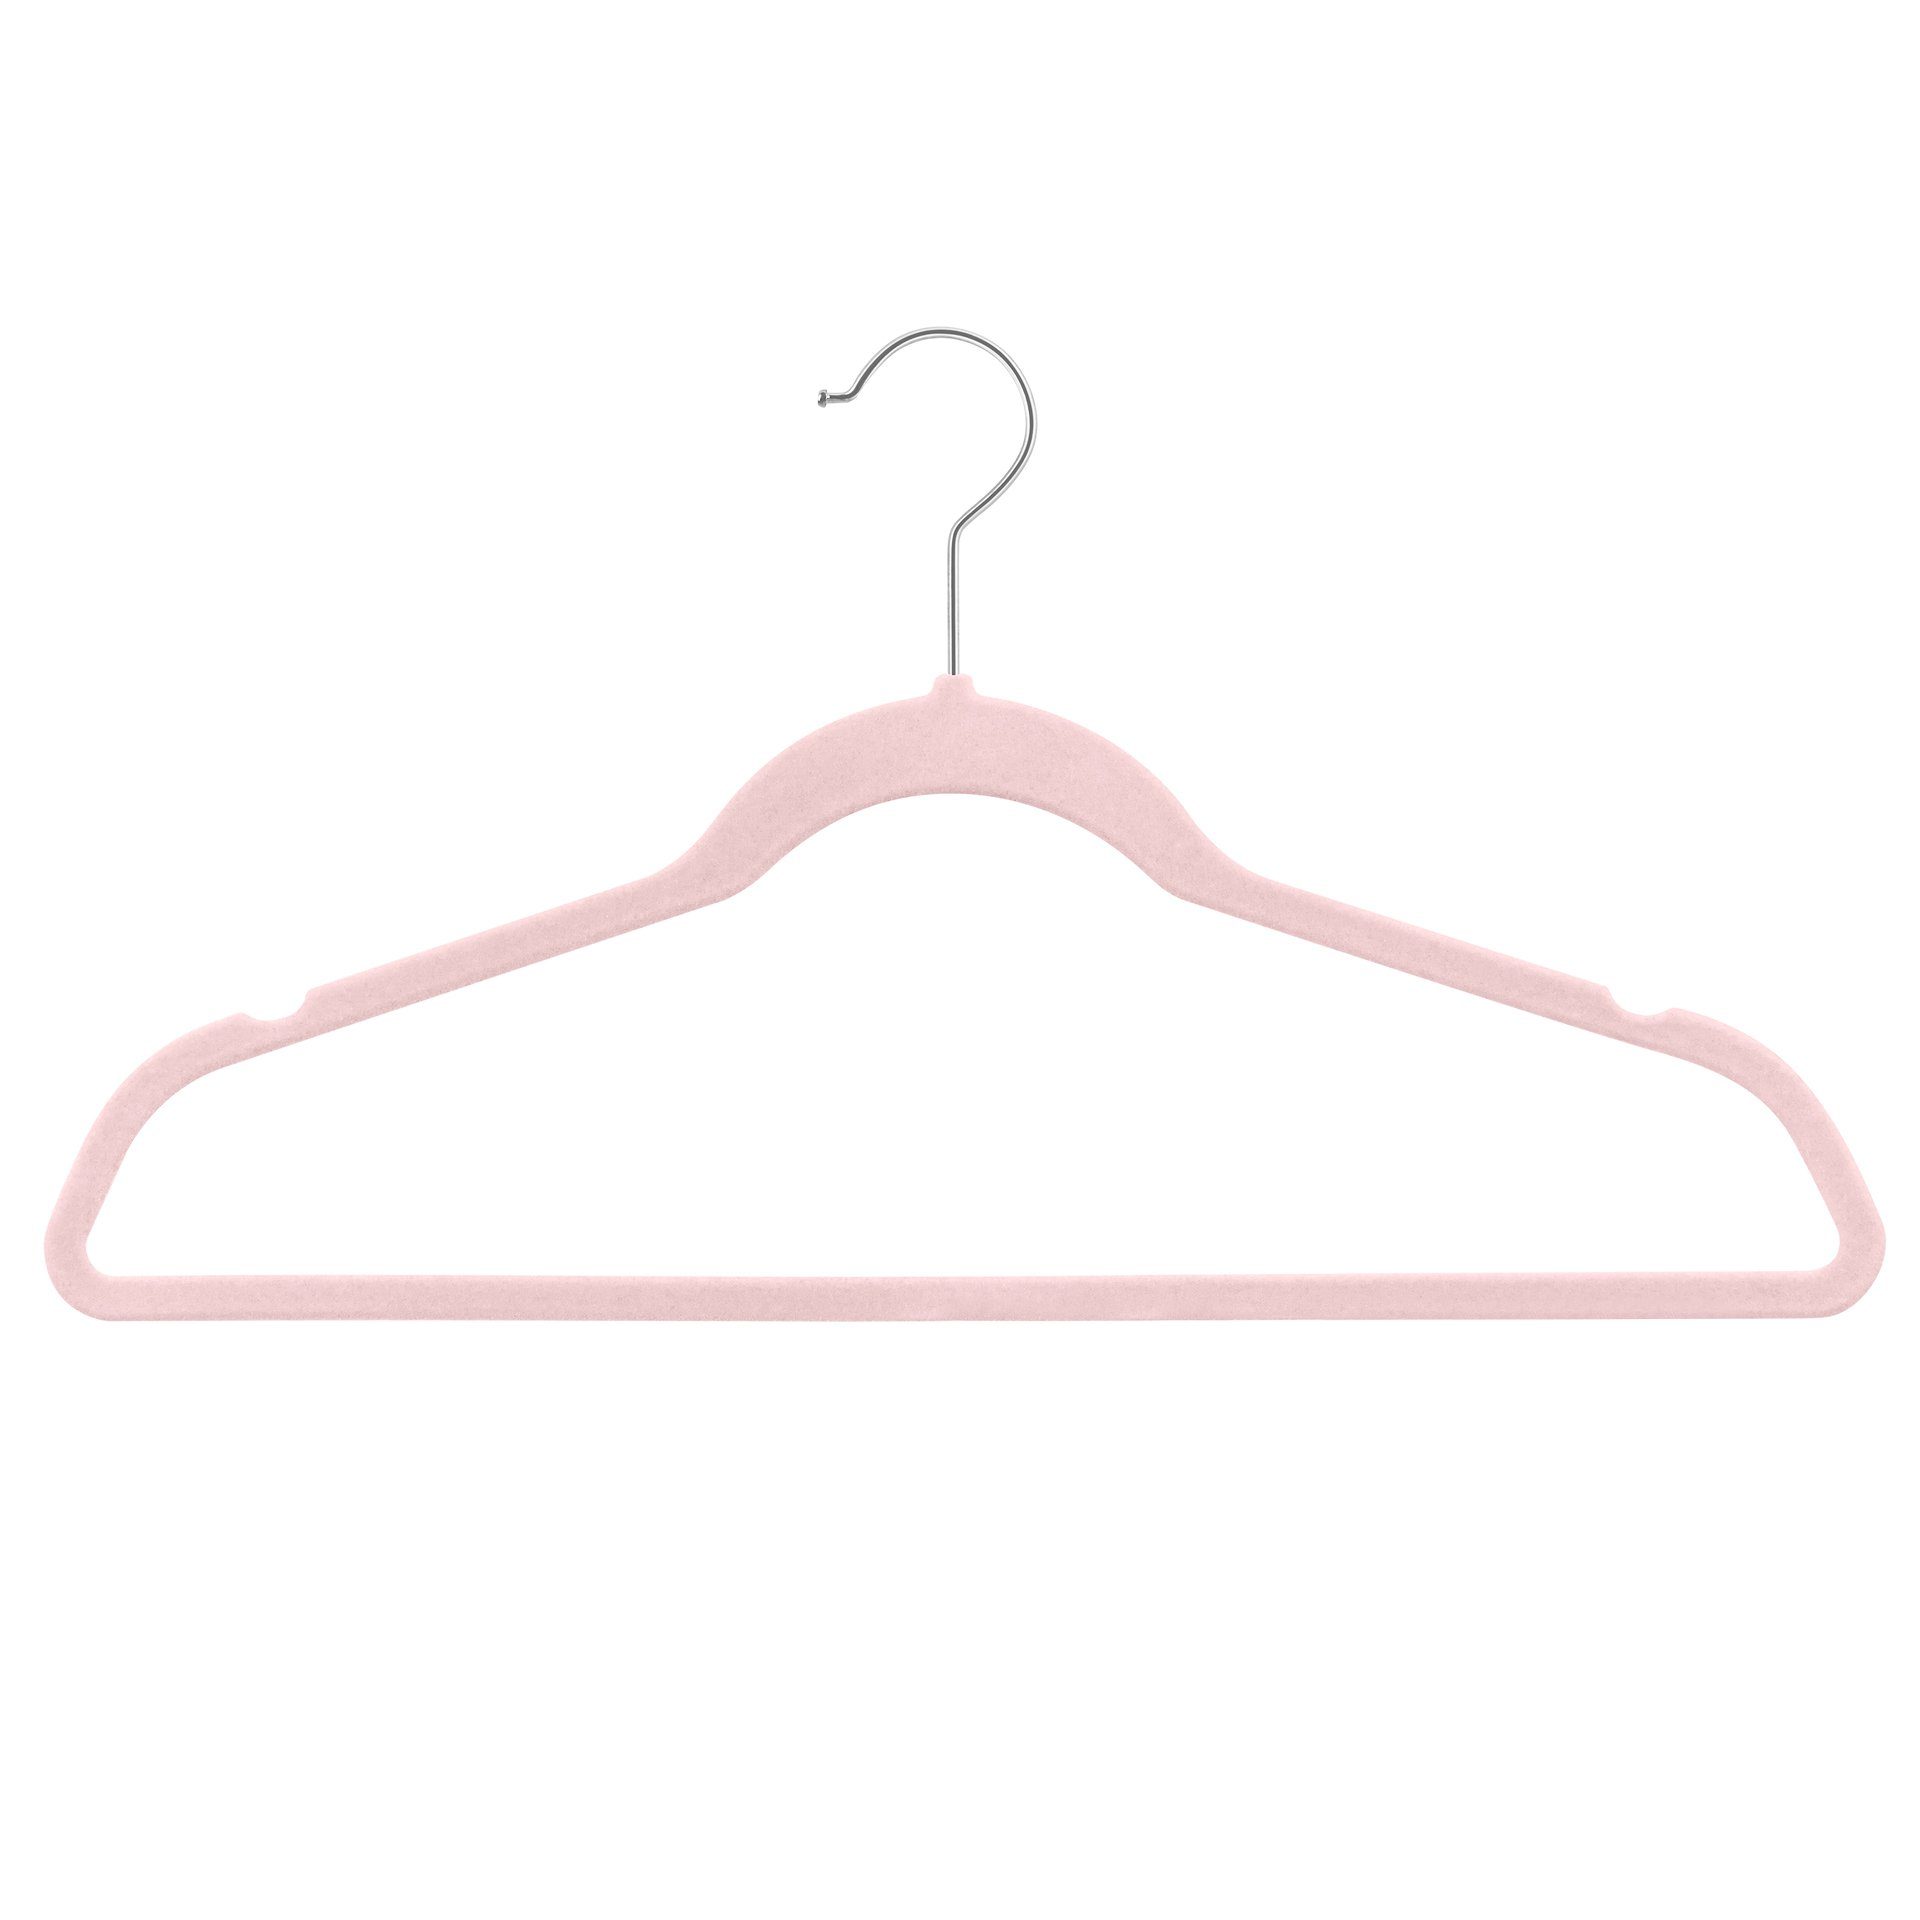 StickandShine Kleiderbügel Samt Kleiderbügel verschiedenen Farben zur Wahl mit verschiedenen Haken Farben (Gold, Schwarz, Rosegold, Zink Silber, Weiß) moderne luxus Bügel Rosa